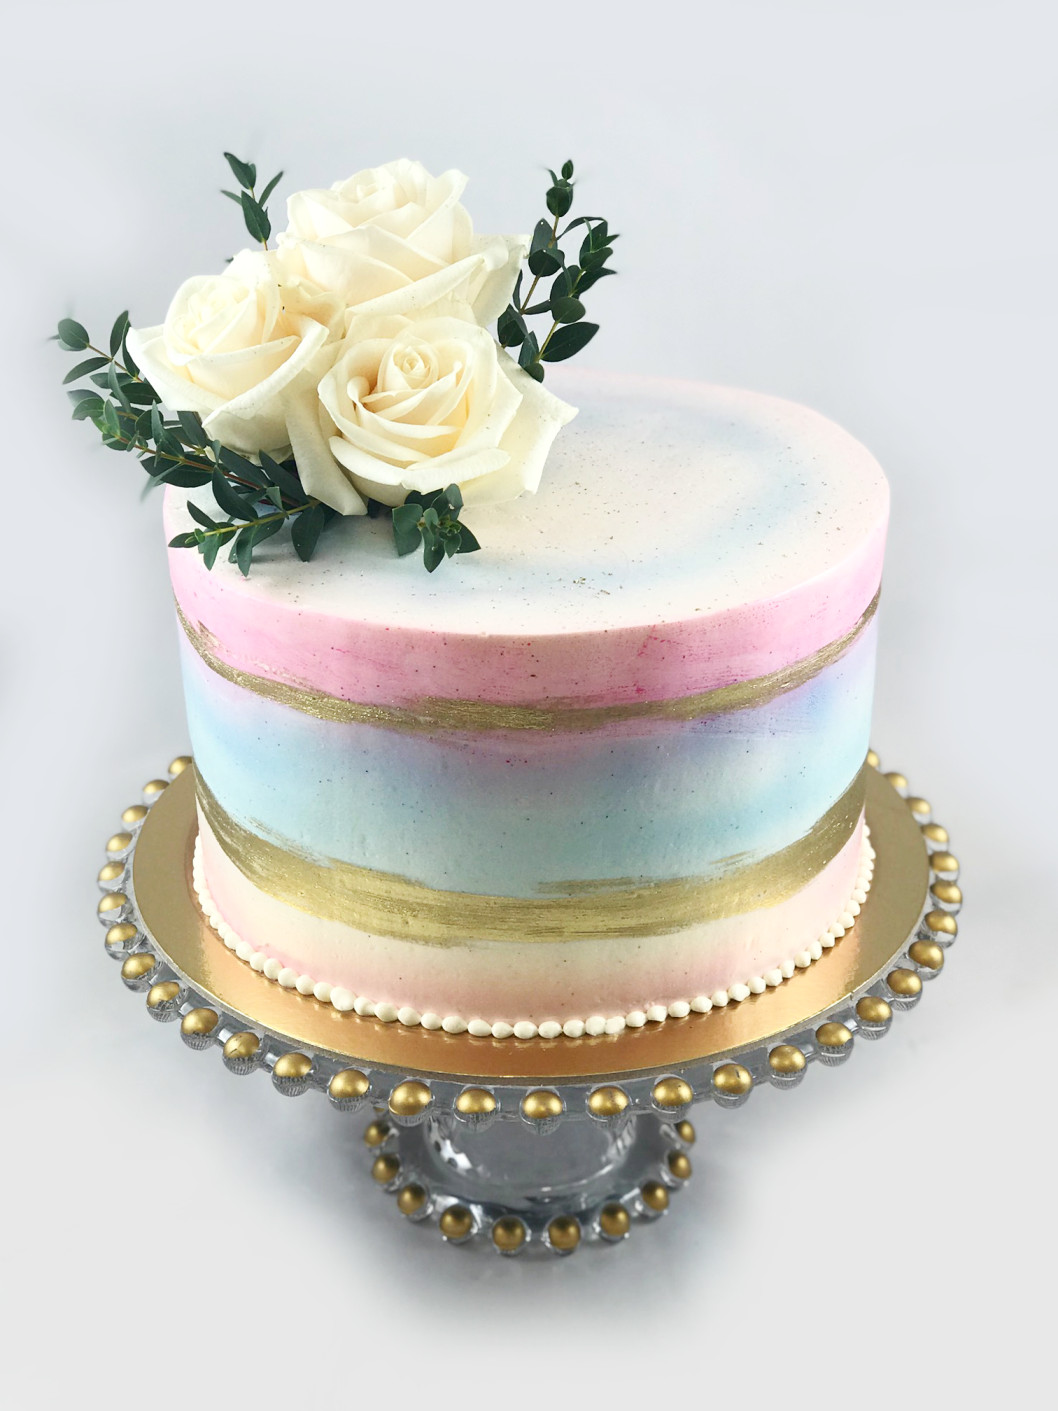 Whippt Desserts - gender reveal cake